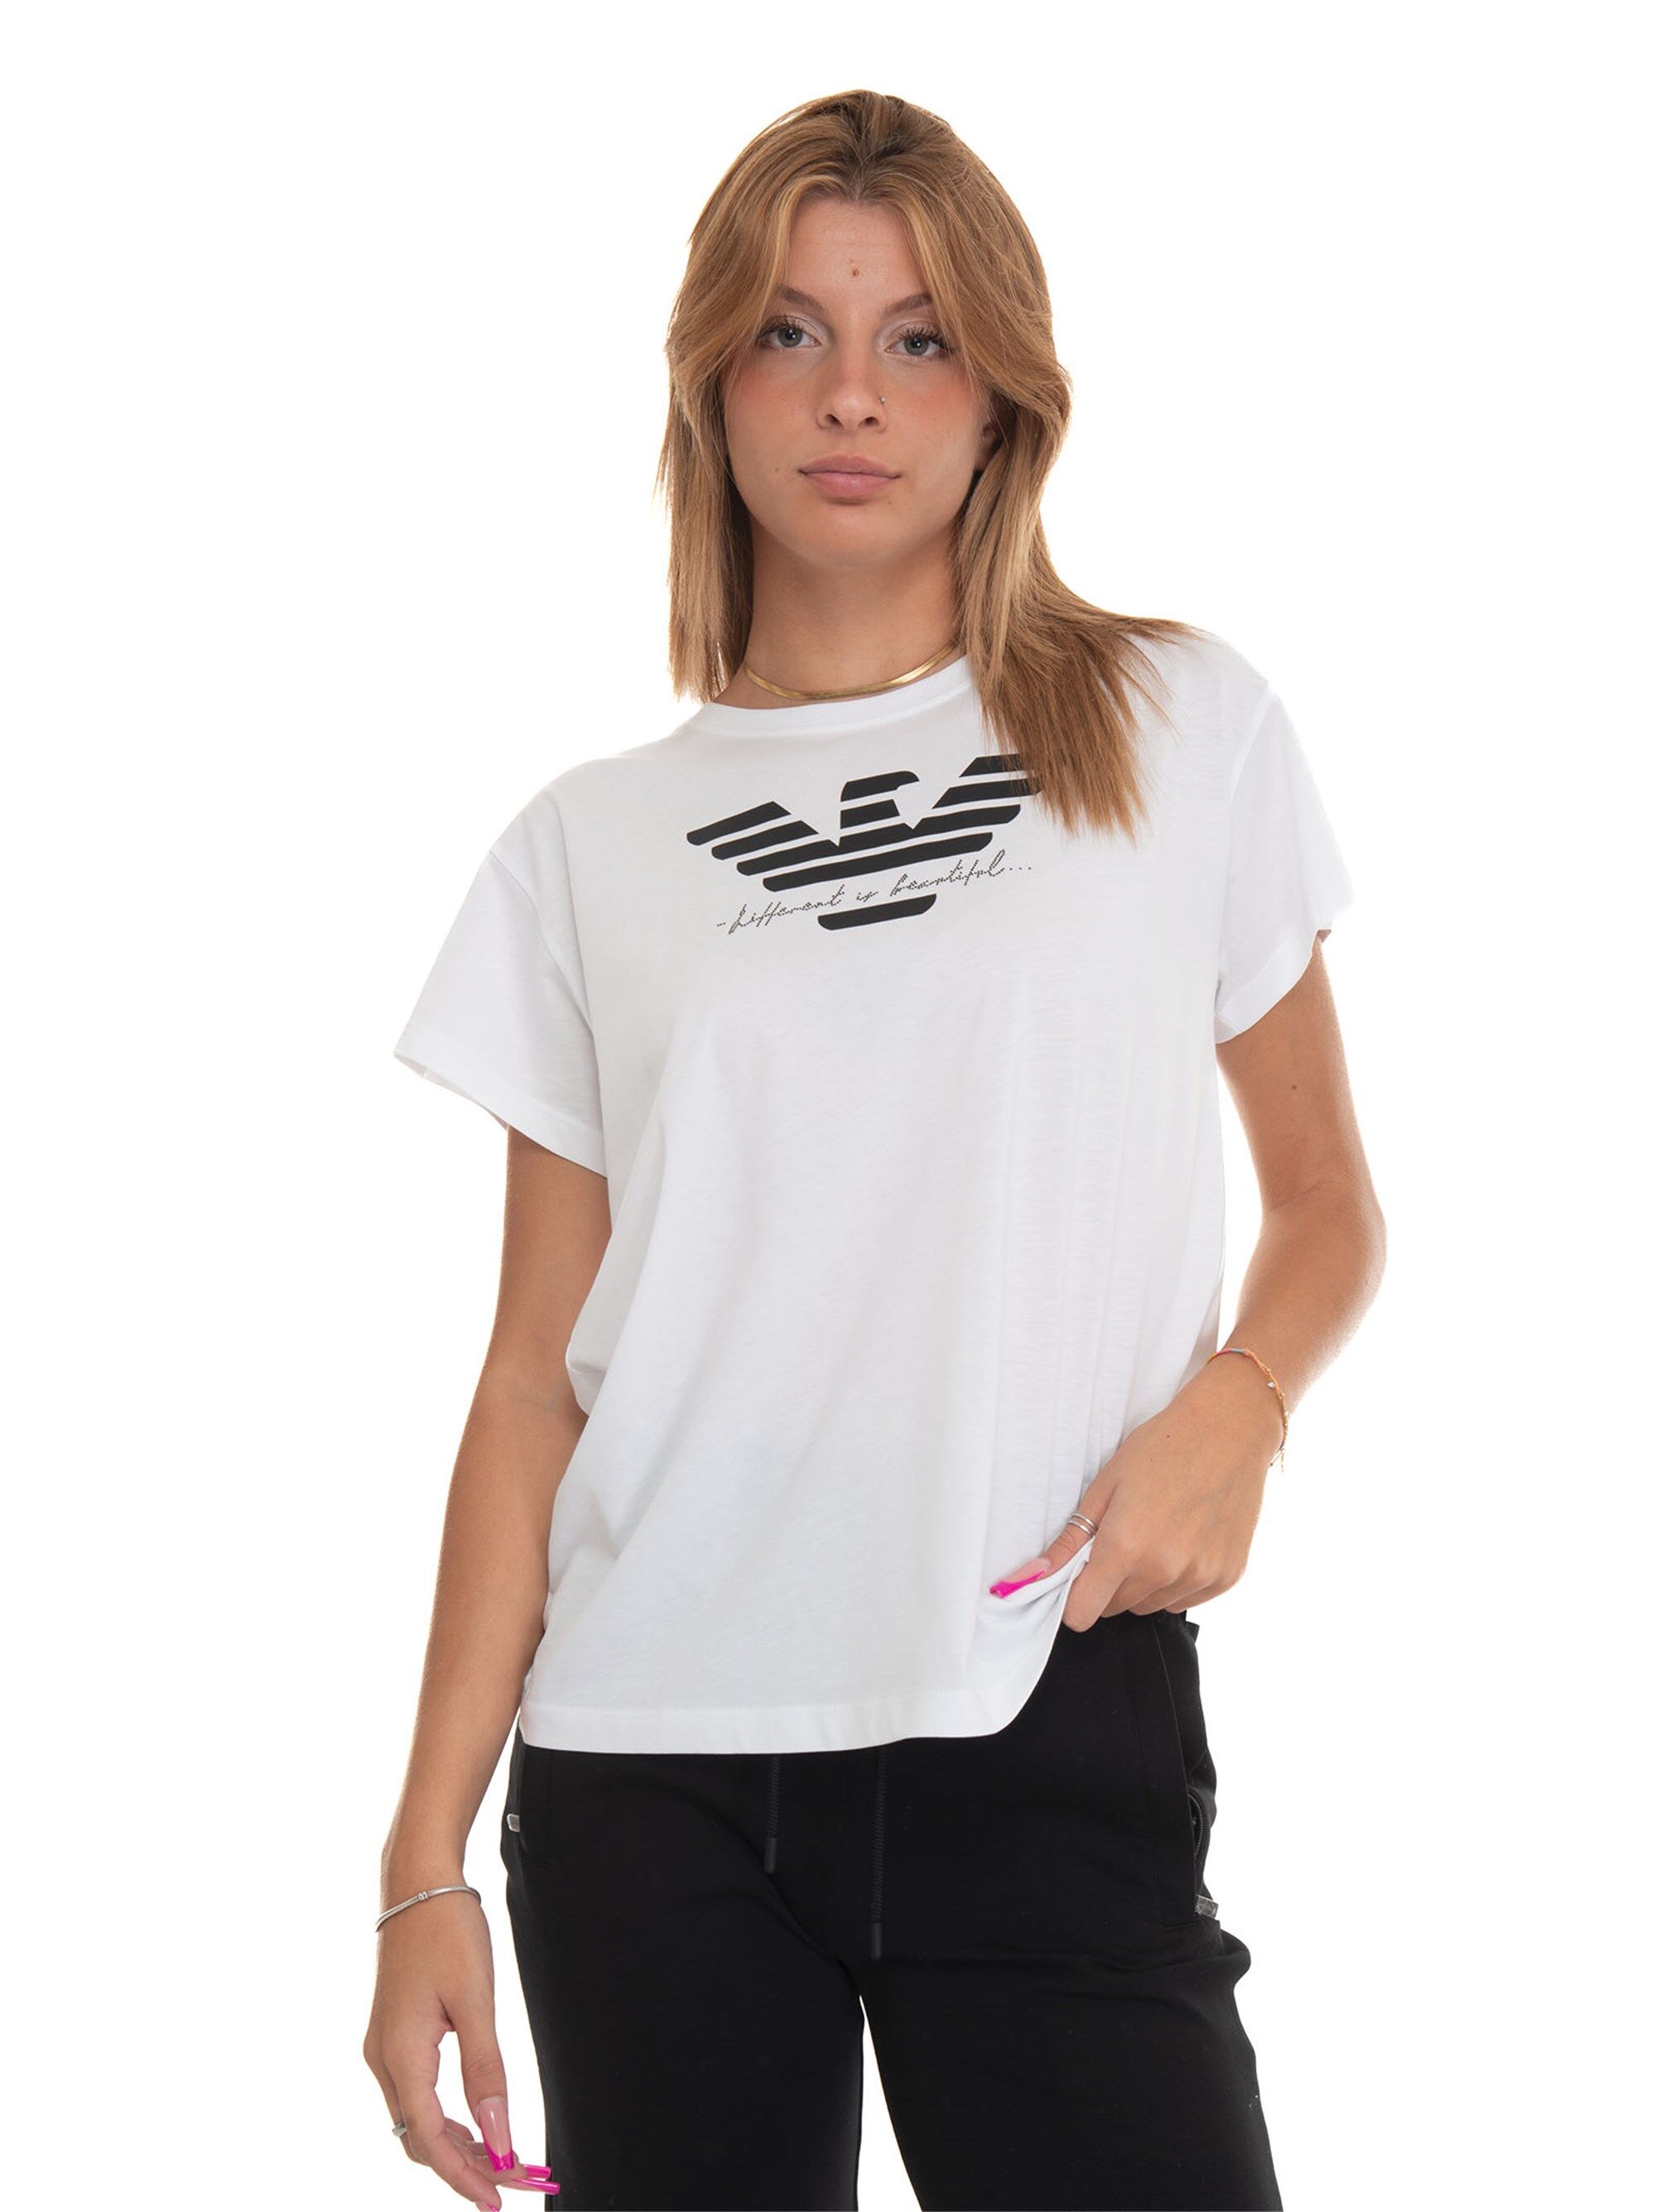 Giorgio Armani T-shirt Bianco-nero Donna L